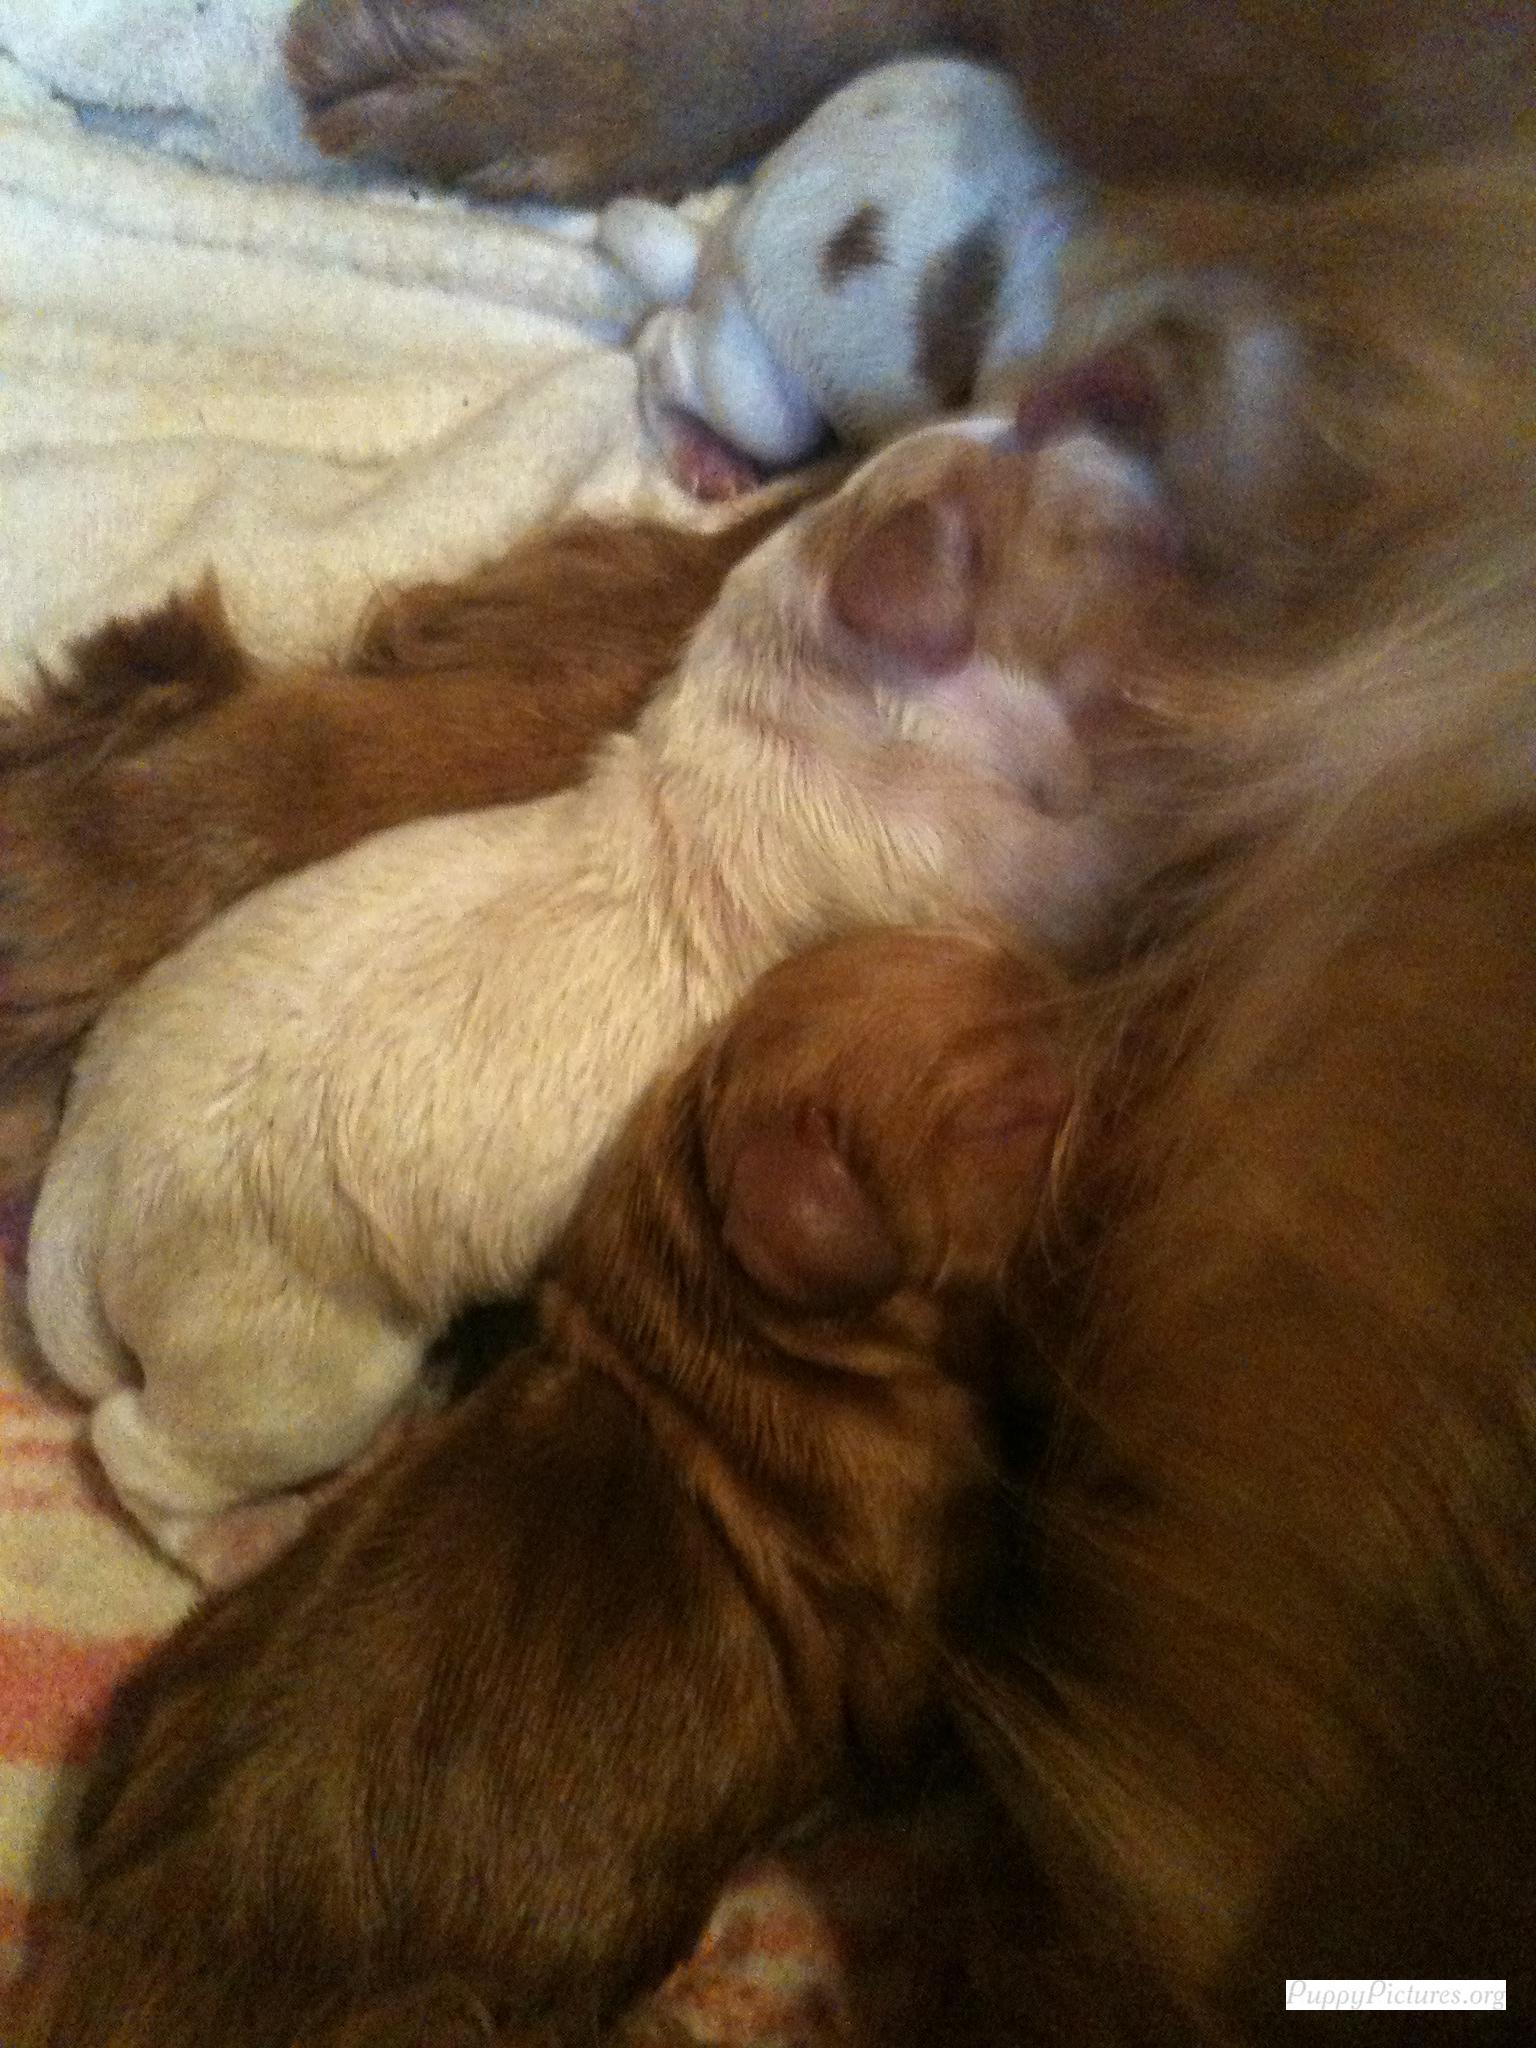 pups 1,2,3 feeding again.jpg
